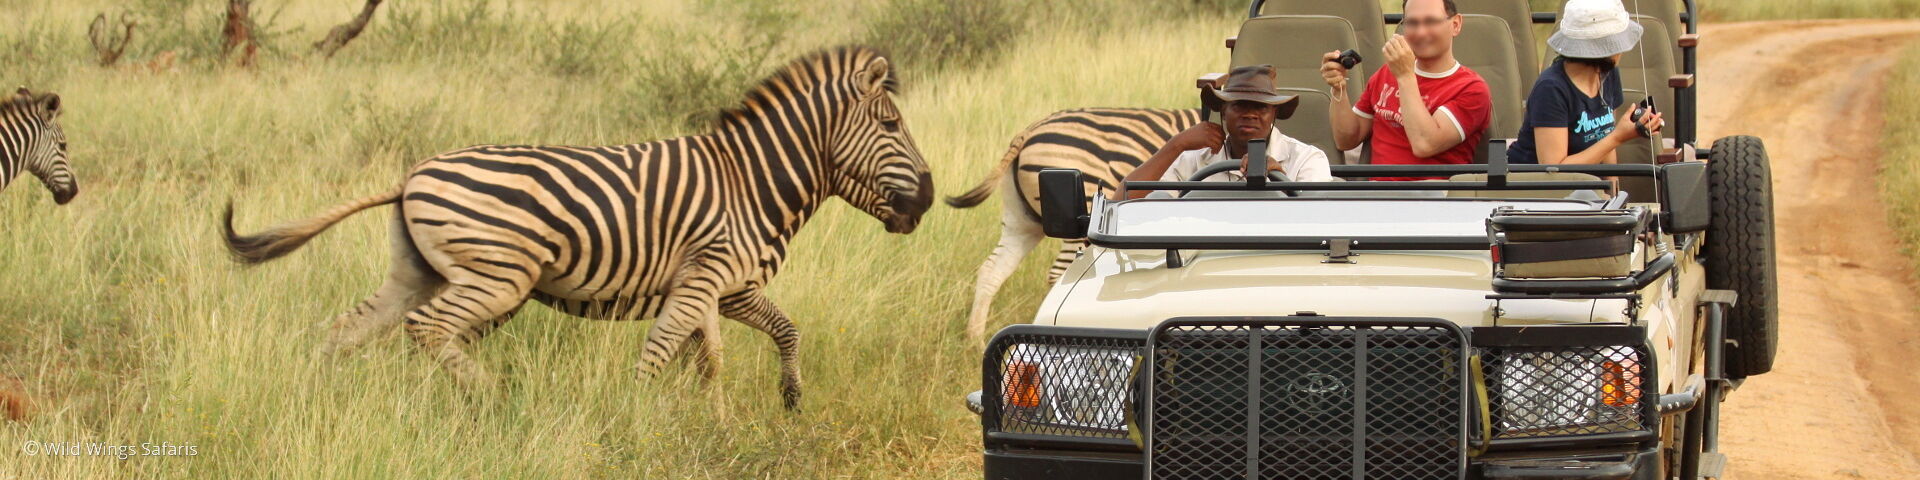 Comparing Safaris